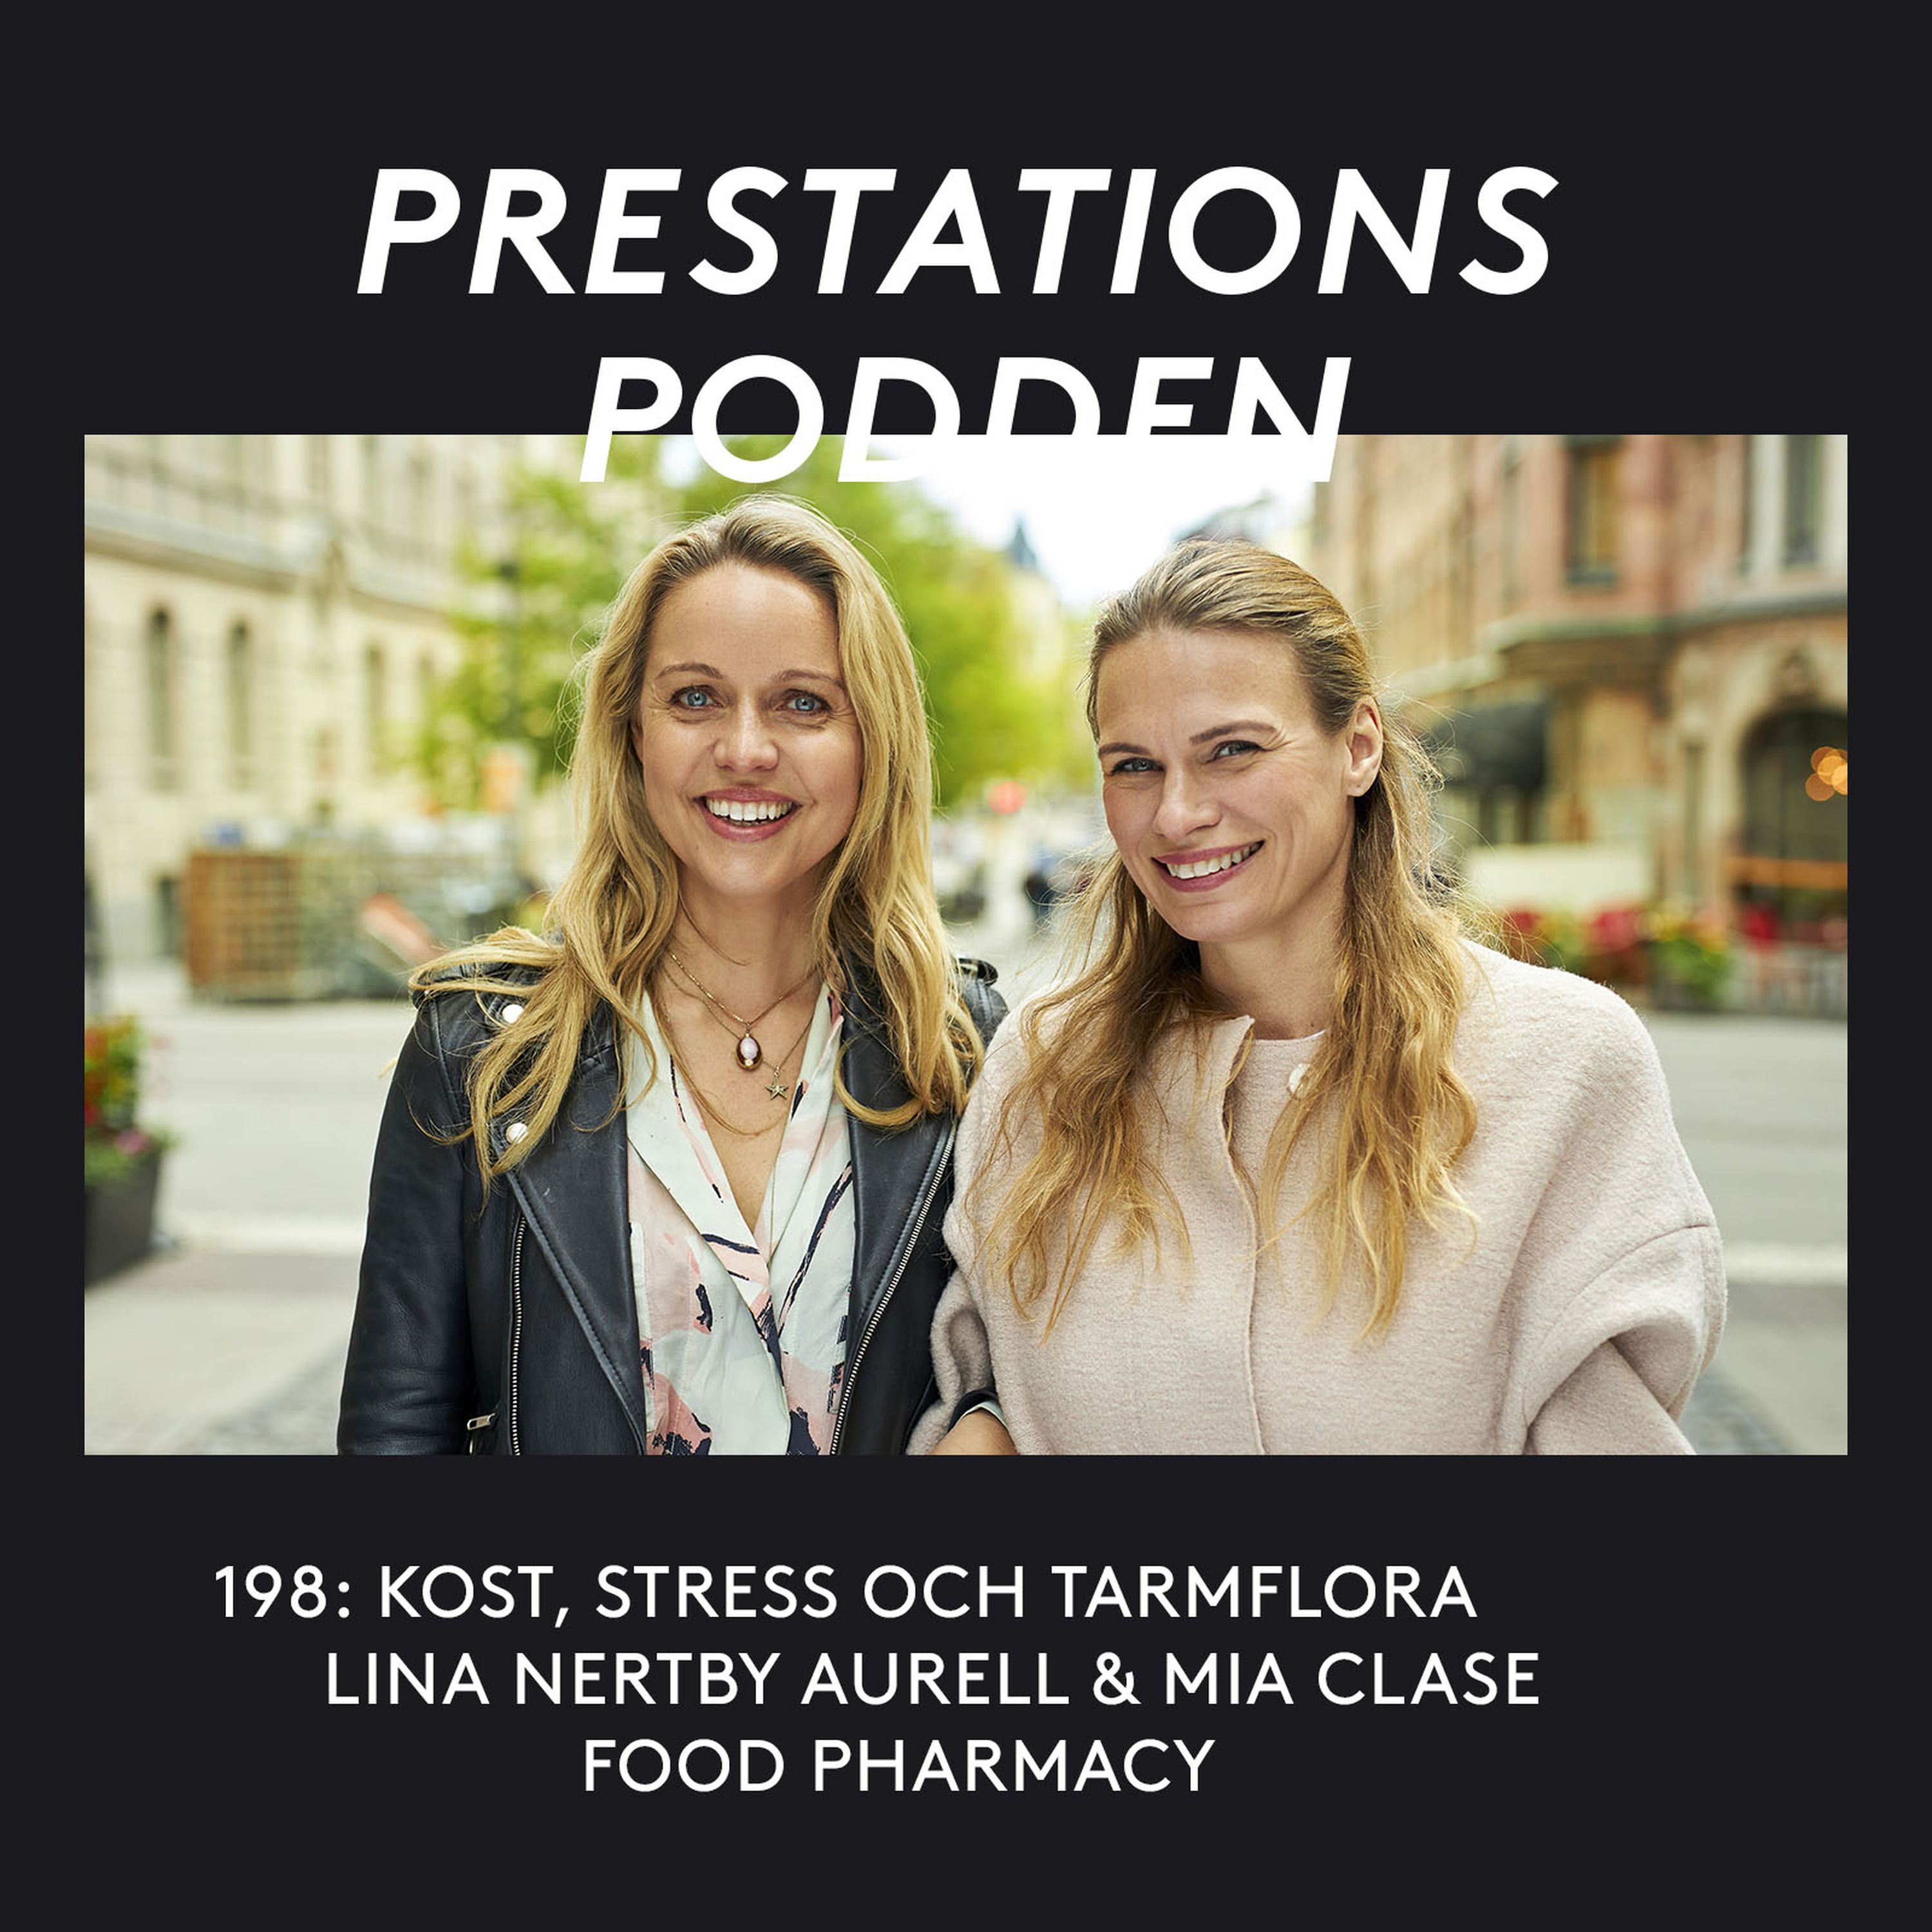 Kost, stress och tarmflora - Lina Nertby Aurell & Mia Clase - Food Pharmacy